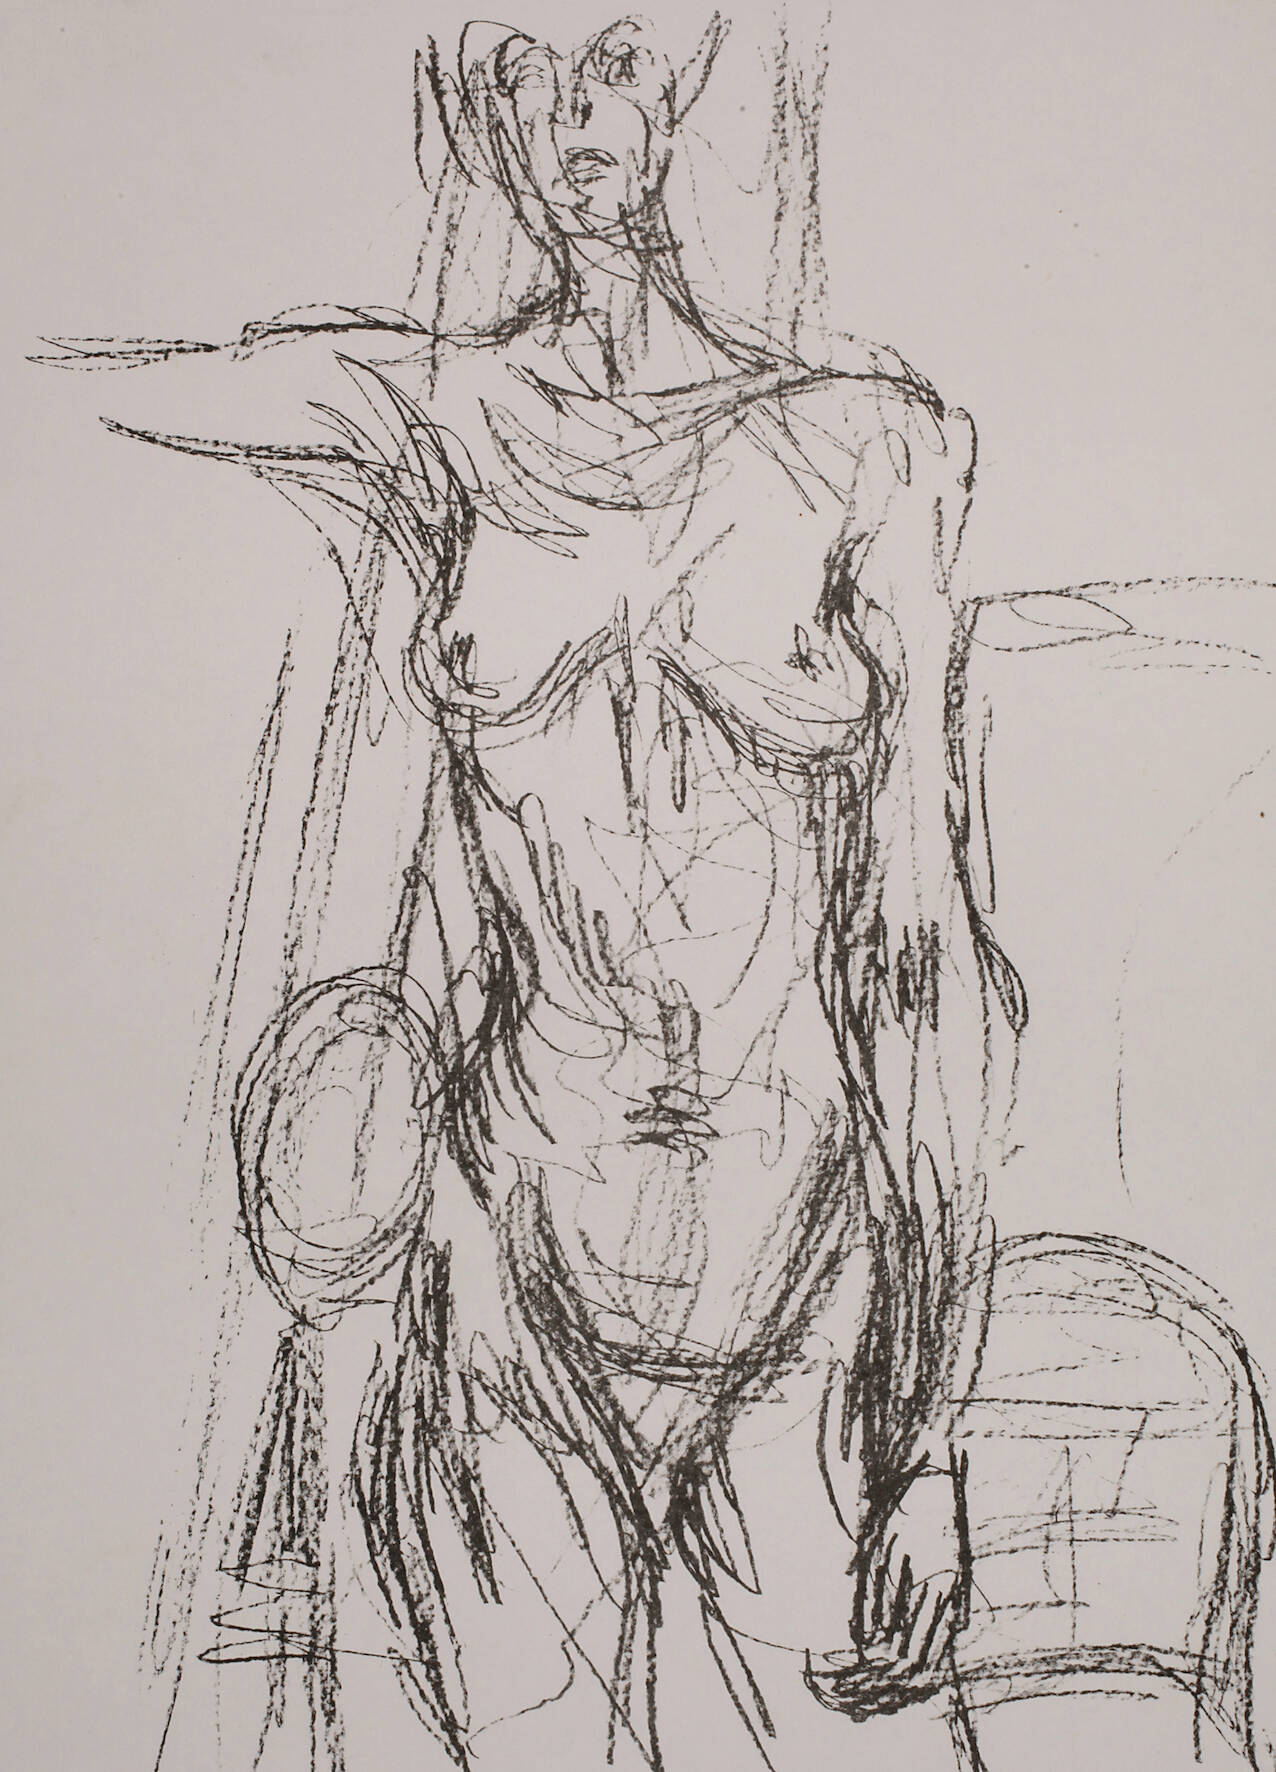 Alberto Giacometti, "Annette"